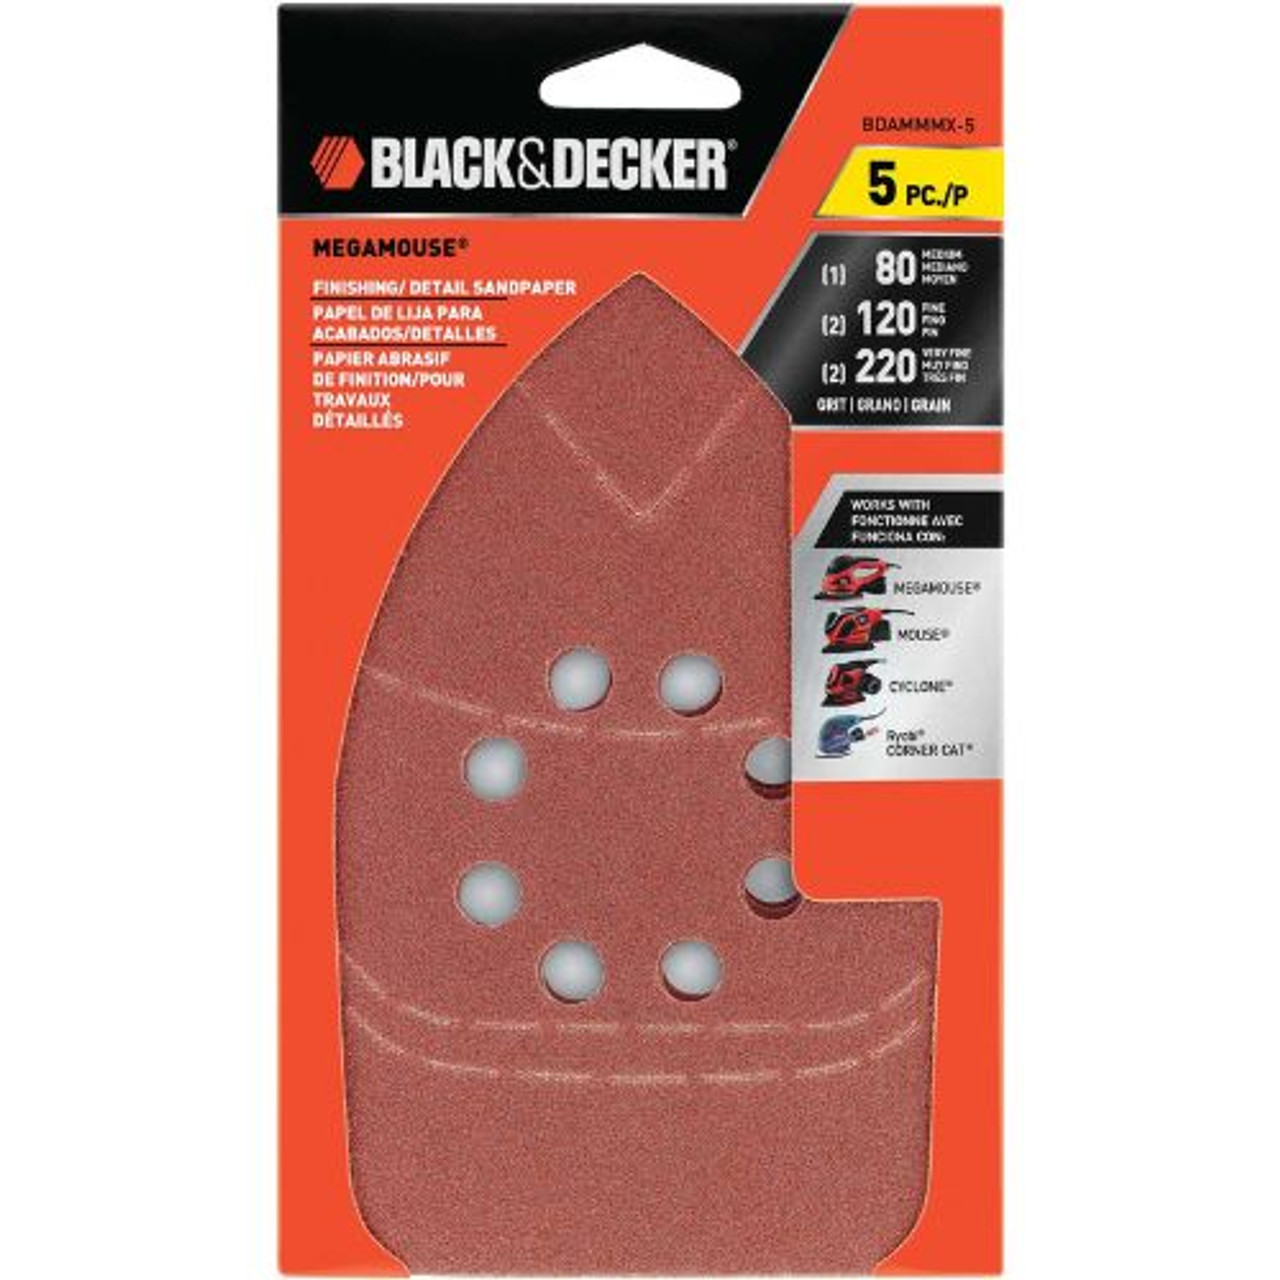 Buy Black & Decker Mouse Sandpaper